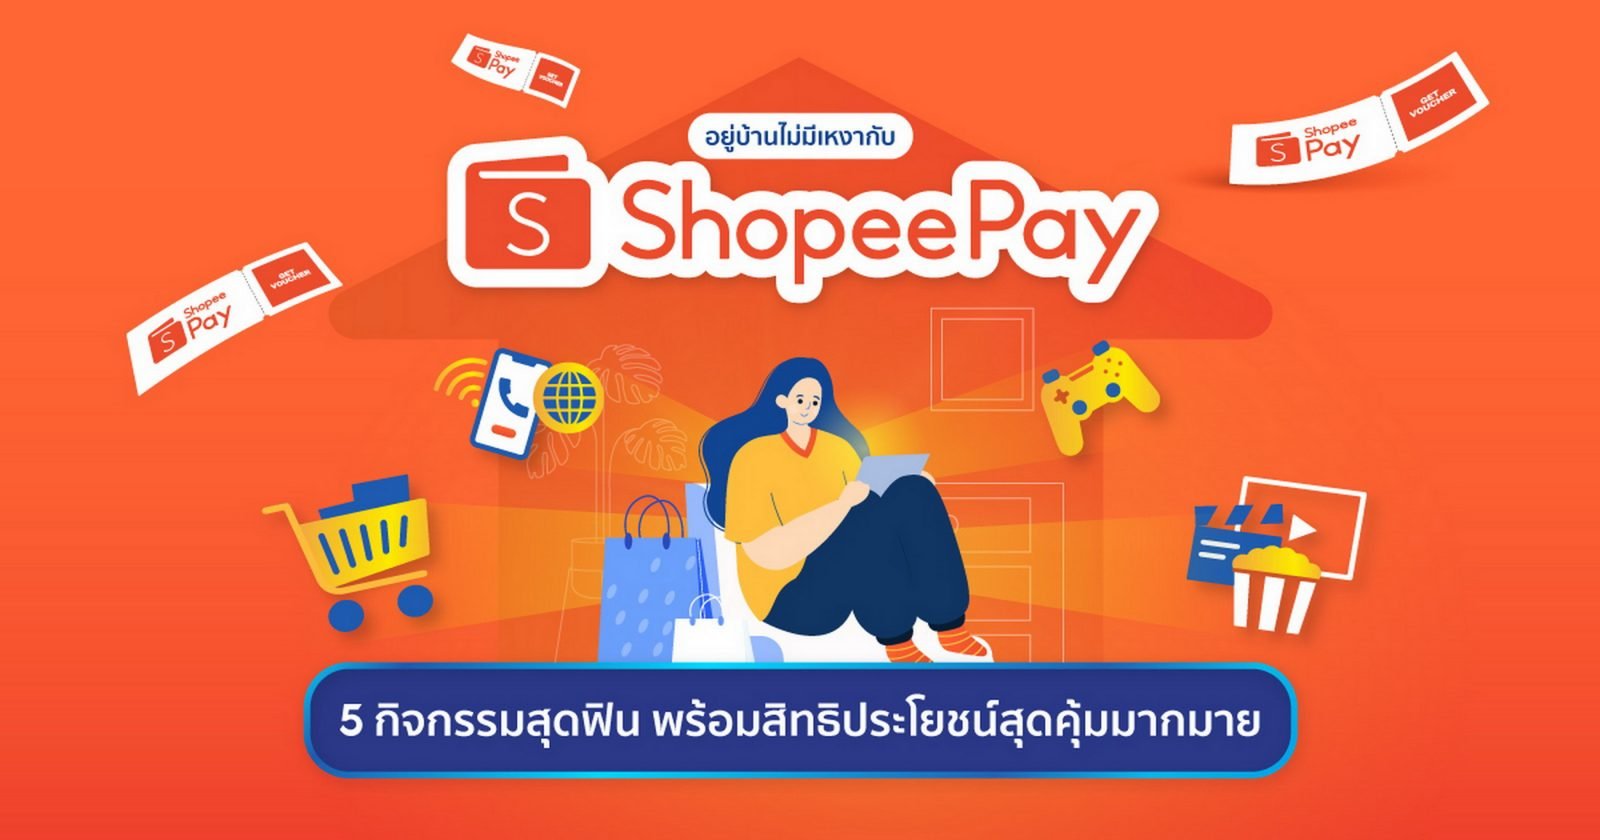 อยู่บ้านไม่มีเหงา! ShopeePay แนะนำกิจกรรมยามว่างสนุกสุดเพลินแบบไม่ทิพย์ พร้อมมอบสิทธิประโยชน์จัดเต็มช่วยเซฟเงินในกระเป๋า